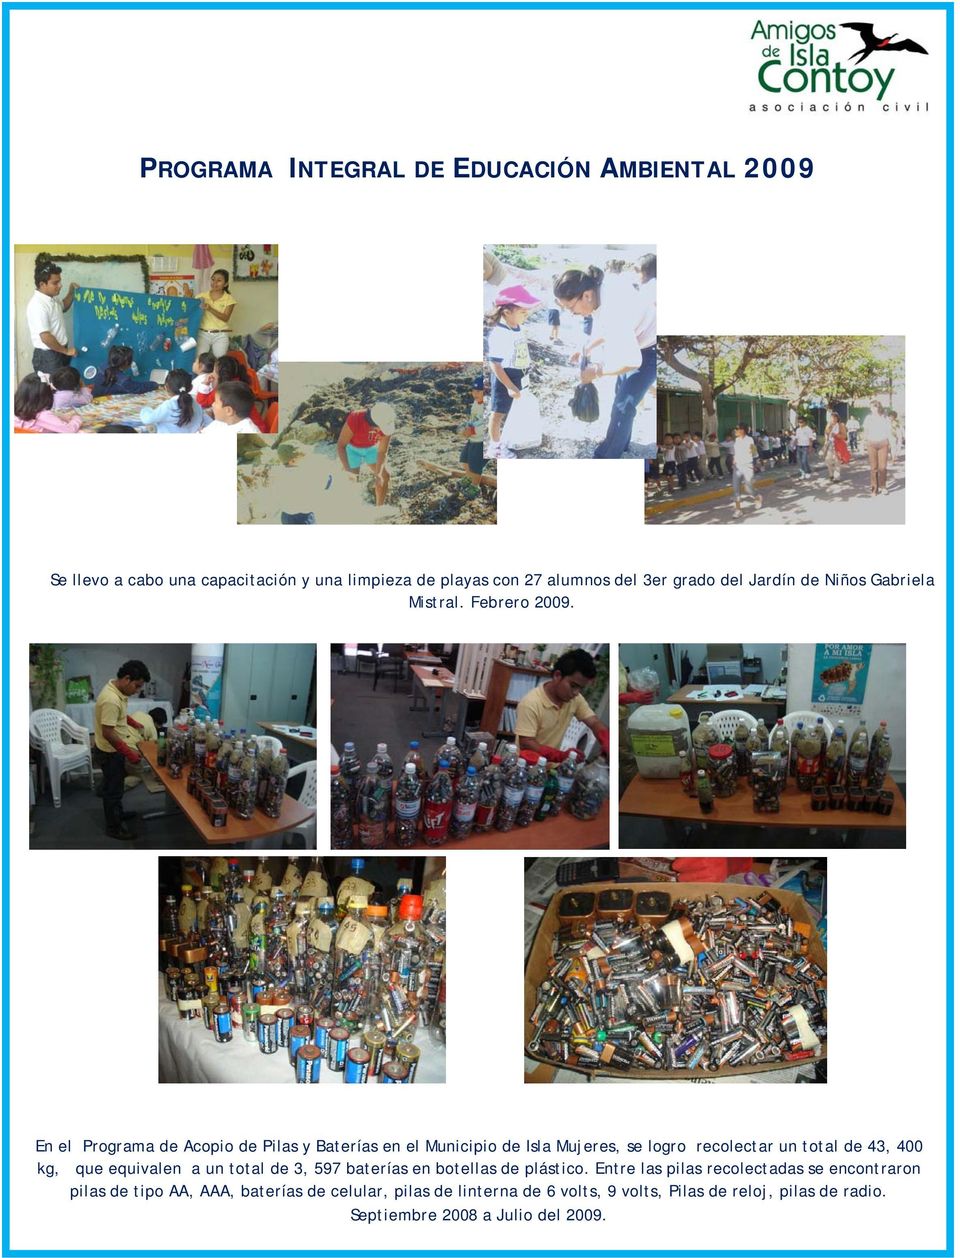 En el Programa de Acopio de Pilas y Baterías en el Municipio de Isla Mujeres, se logro recolectar un total de 43, 400 kg, que